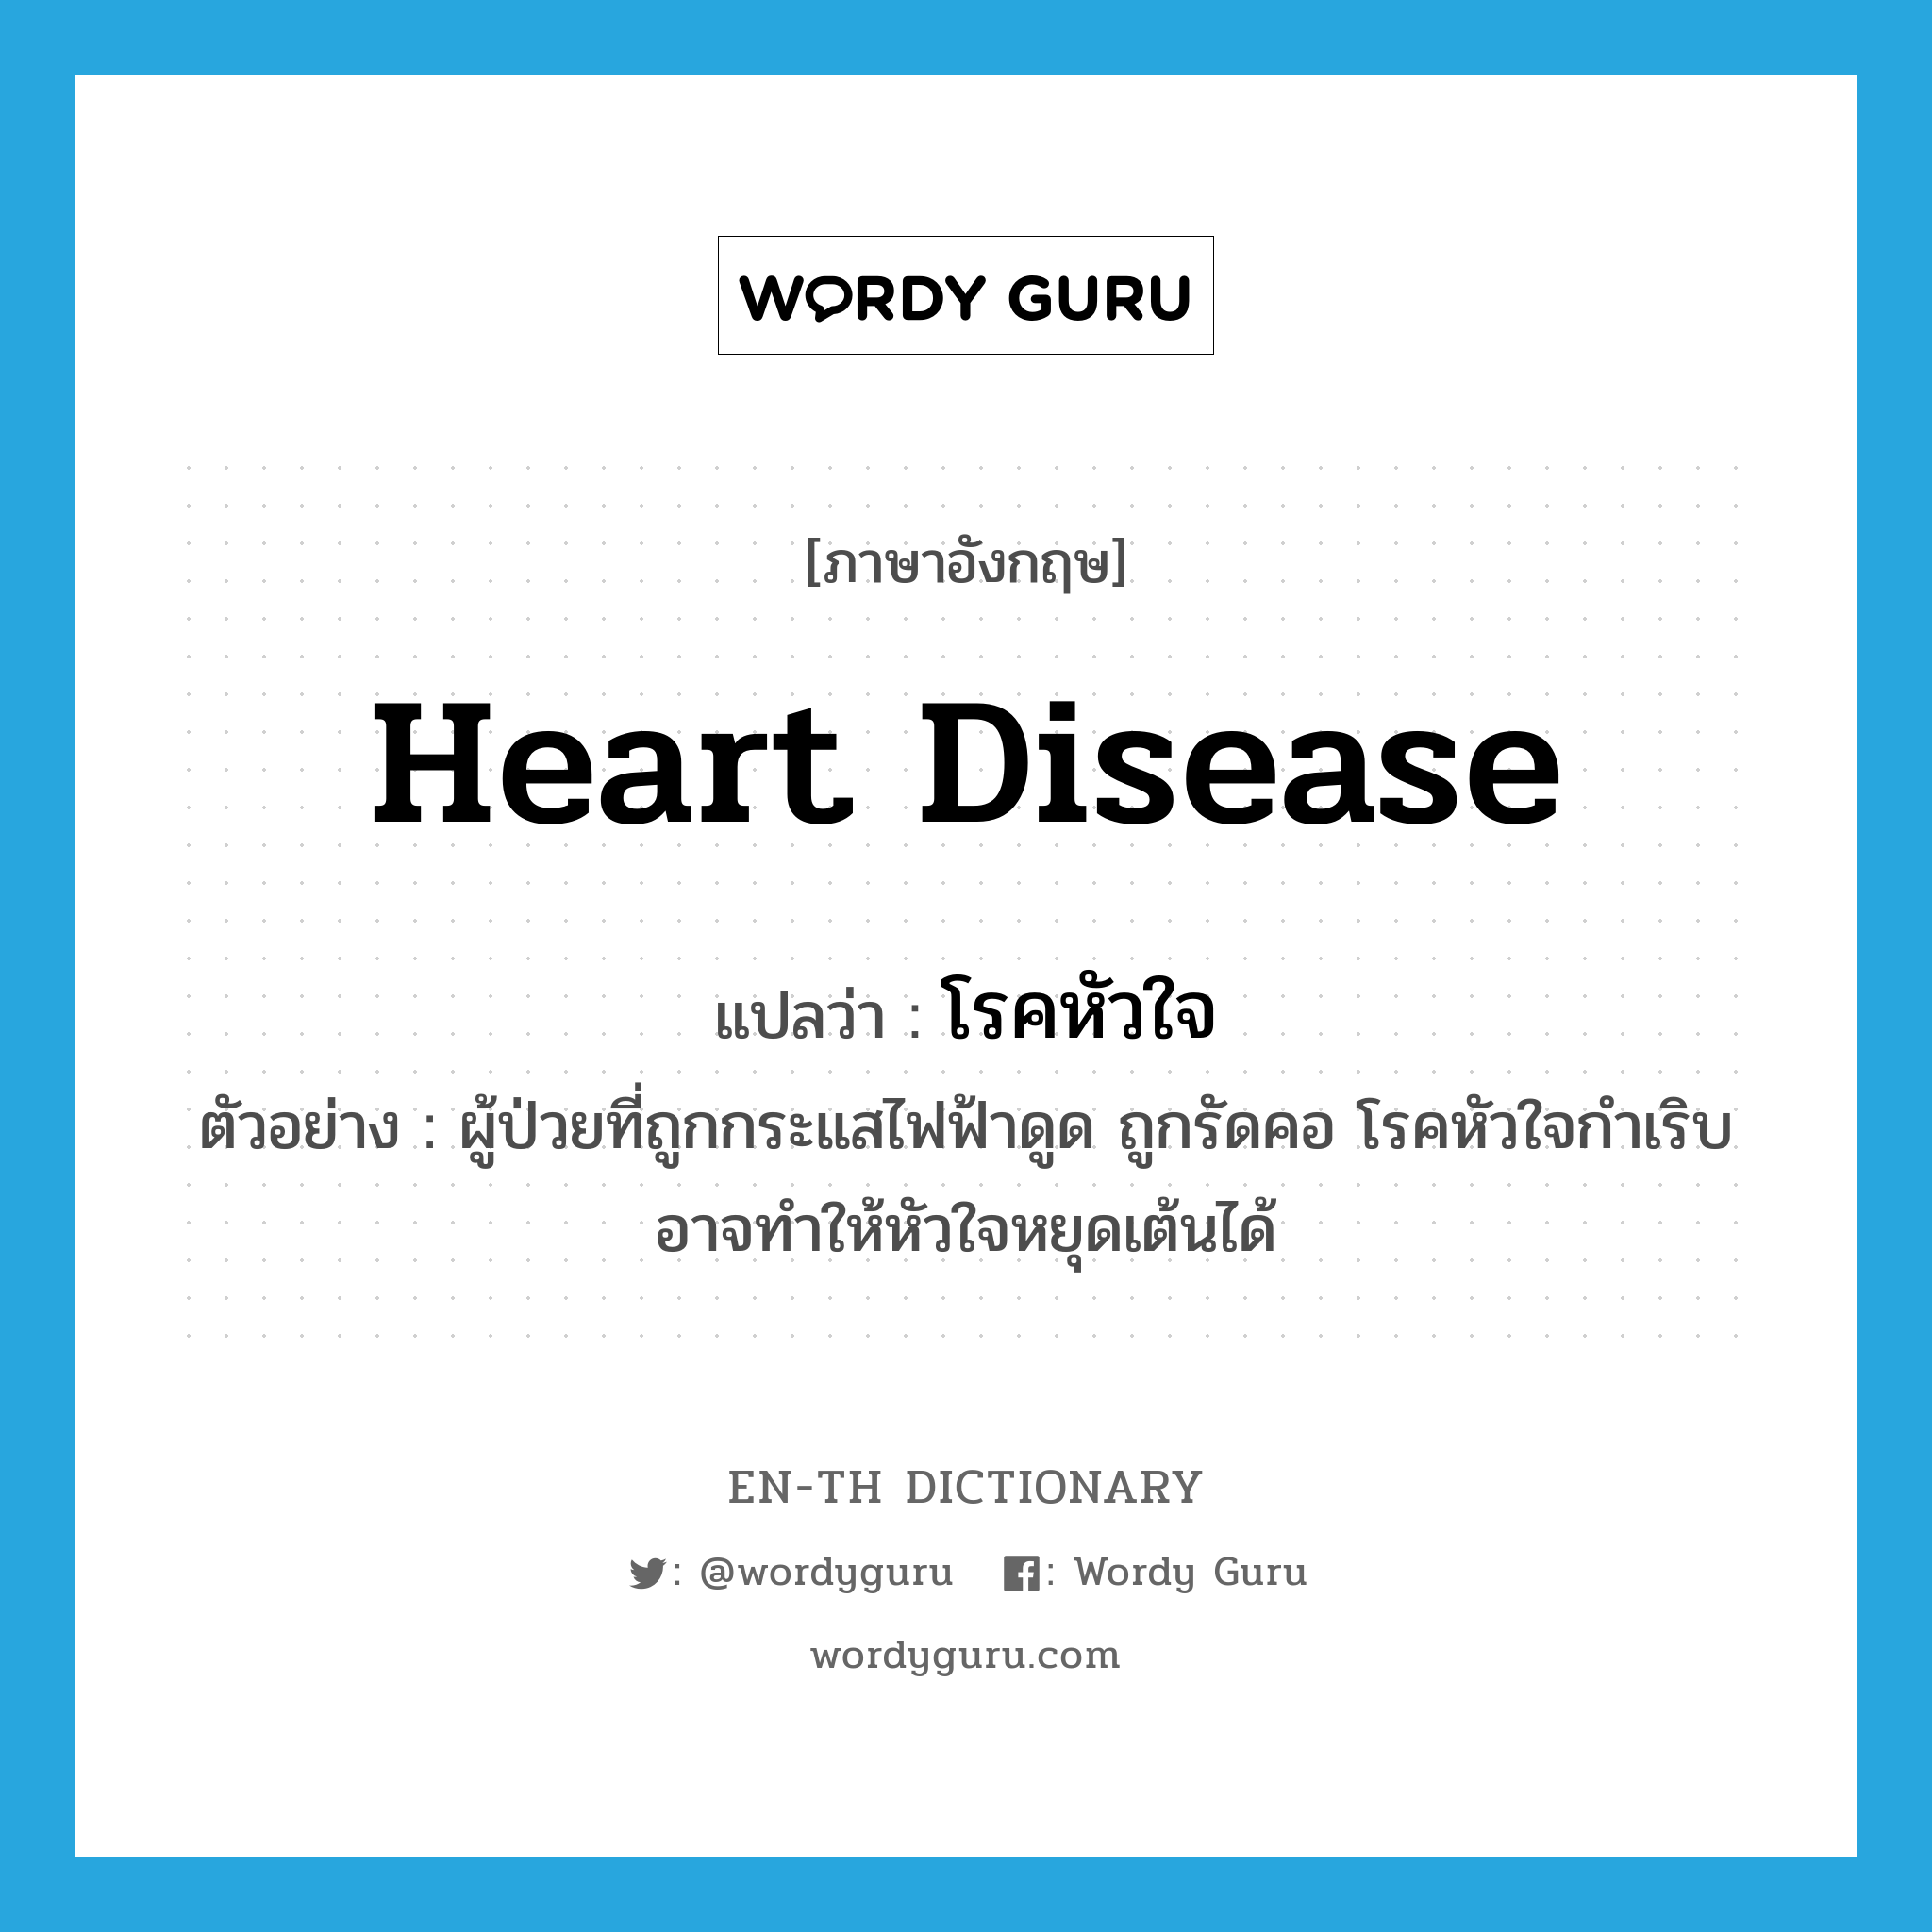 heart disease แปลว่า?, คำศัพท์ภาษาอังกฤษ heart disease แปลว่า โรคหัวใจ ประเภท N ตัวอย่าง ผู้ป่วยที่ถูกกระแสไฟฟ้าดูด ถูกรัดคอ โรคหัวใจกำเริบ อาจทำให้หัวใจหยุดเต้นได้ หมวด N